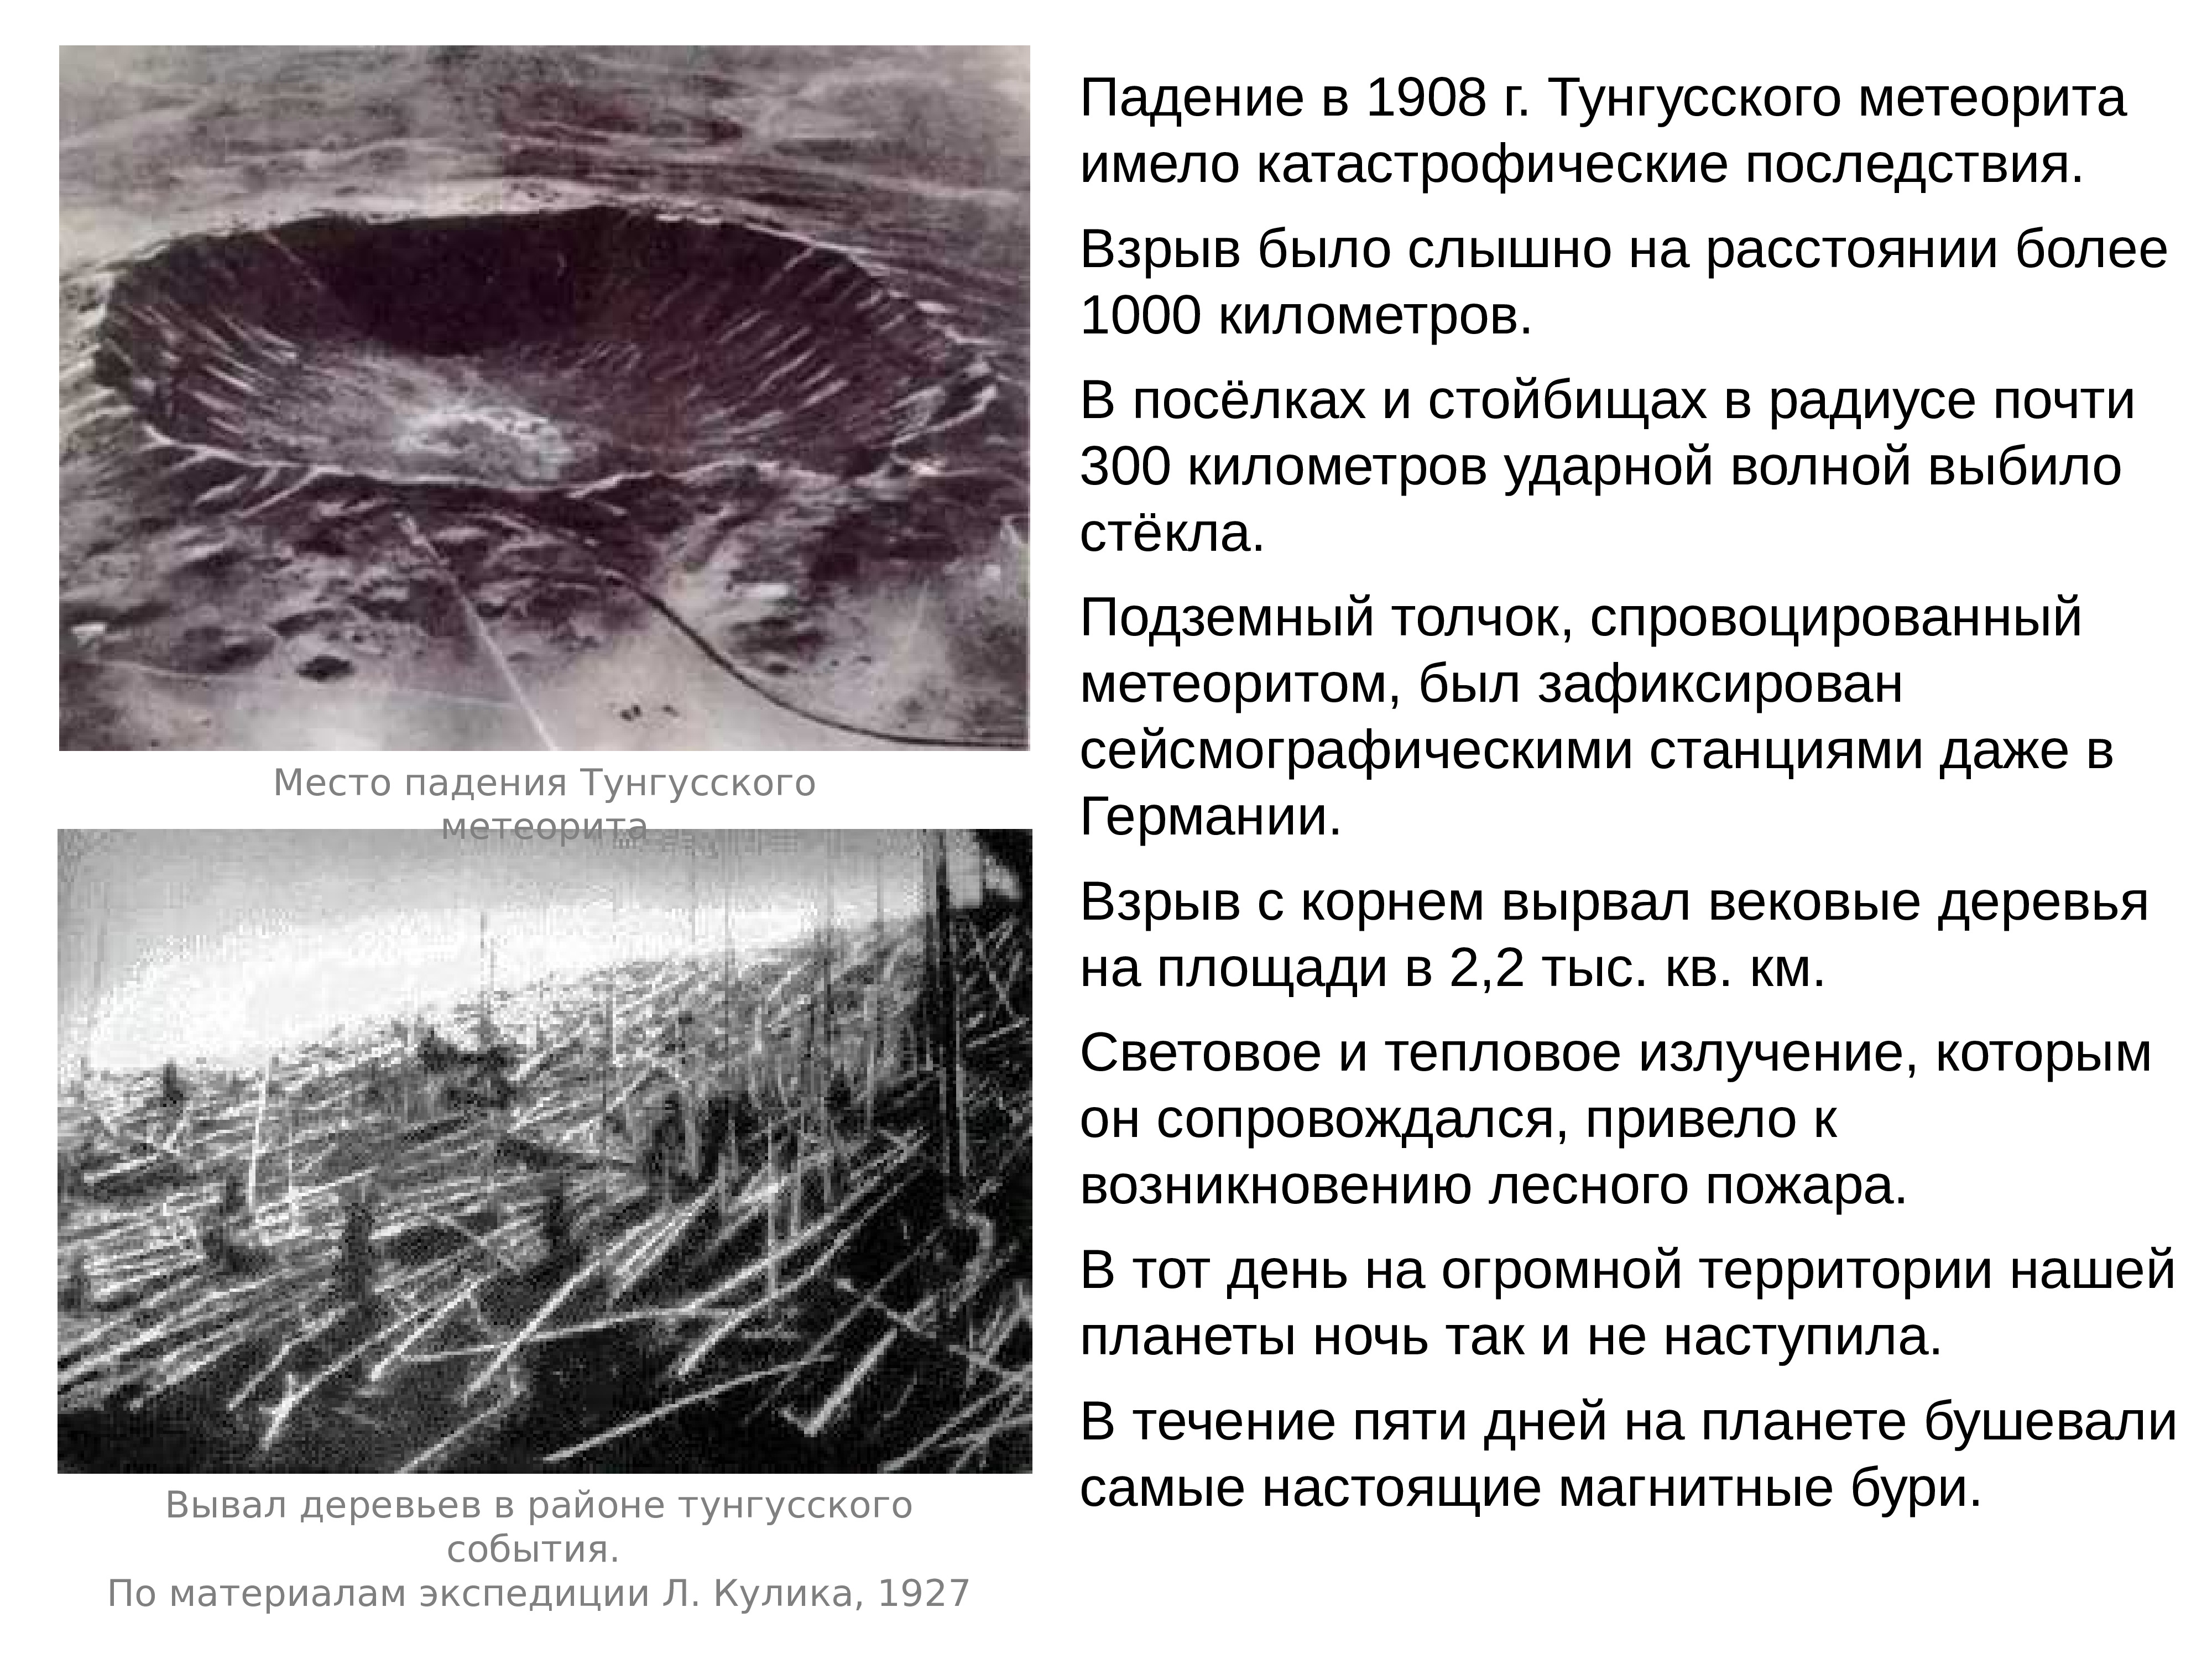 Последствия падения Тунгусского метеорита в 1908 году